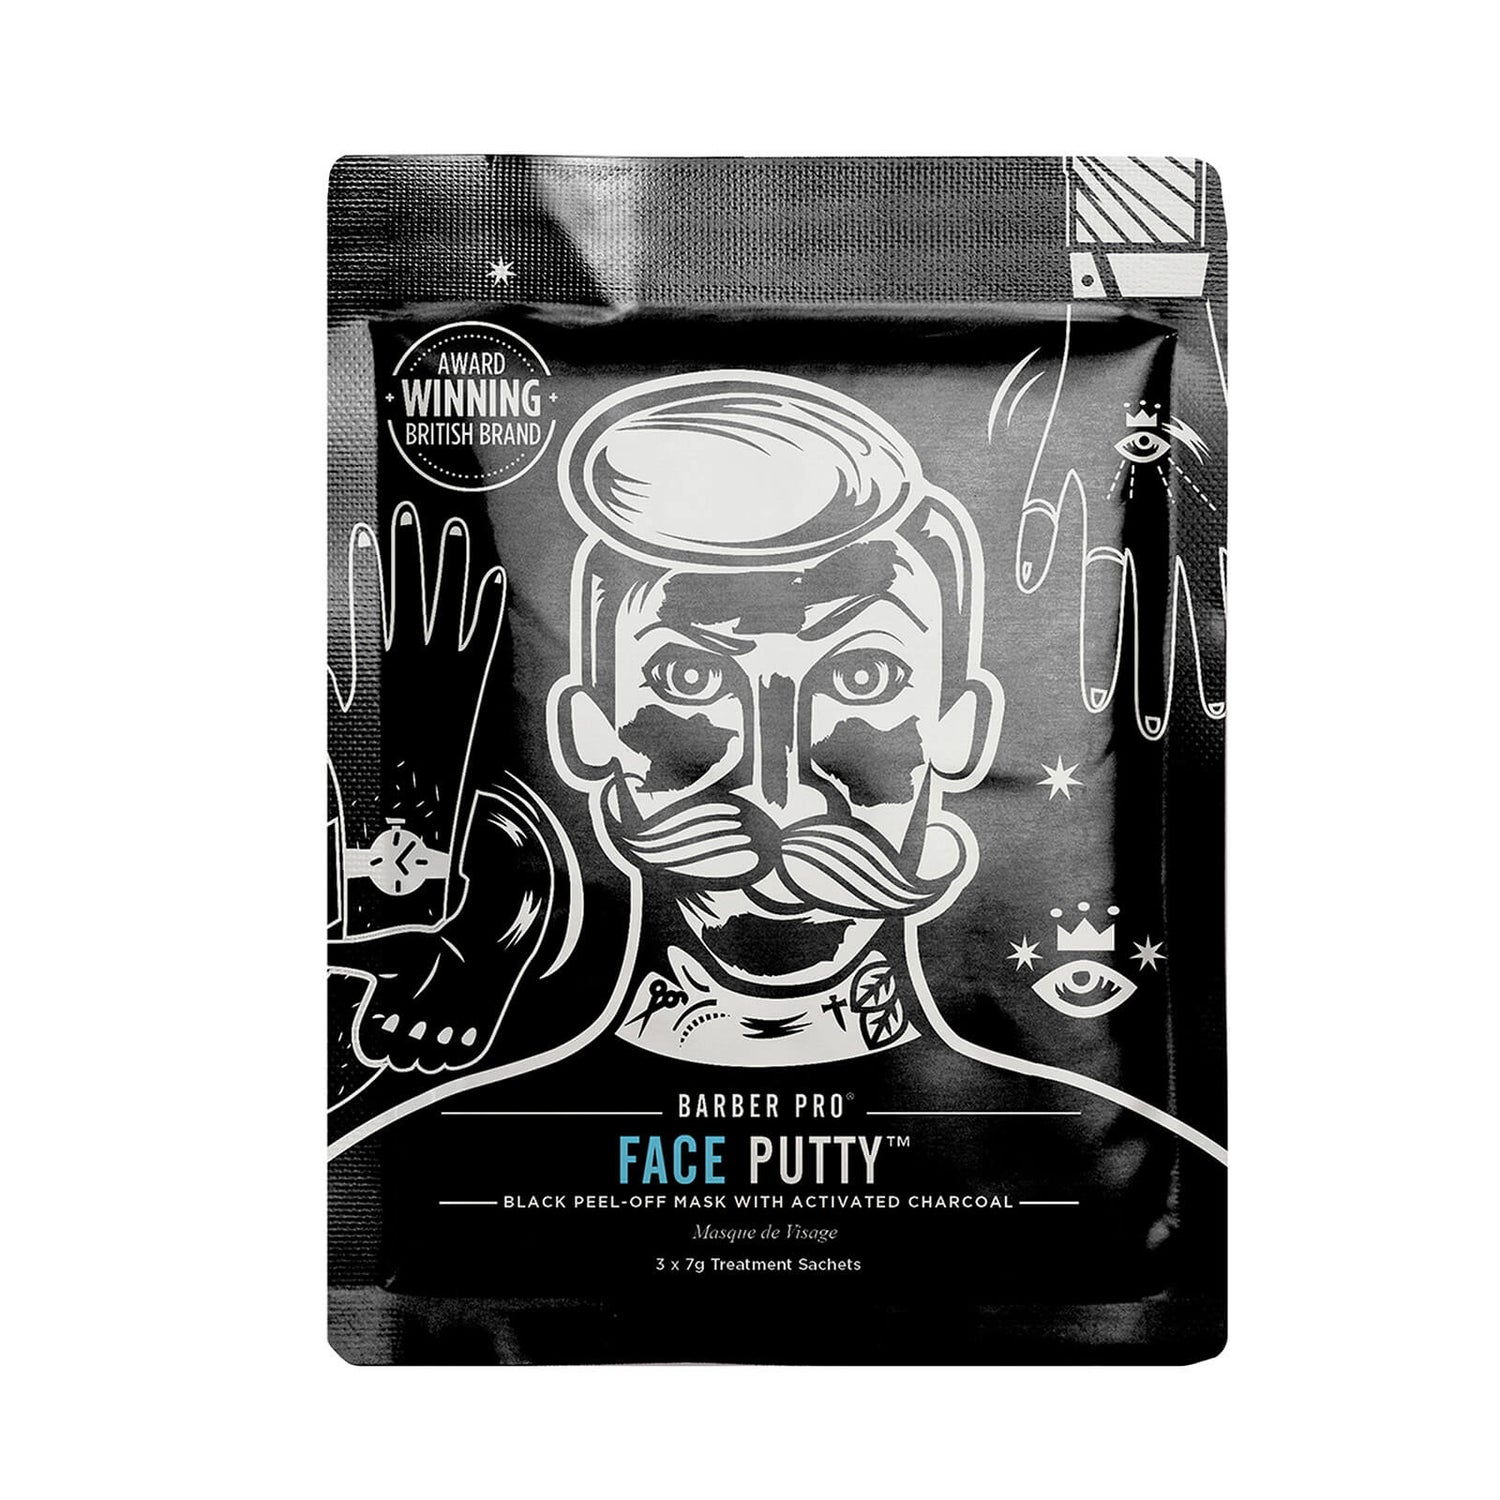 Máscara Preta de Peel-off com Carvão Ativado Face Putty da BARBER PRO (3 utilizações)